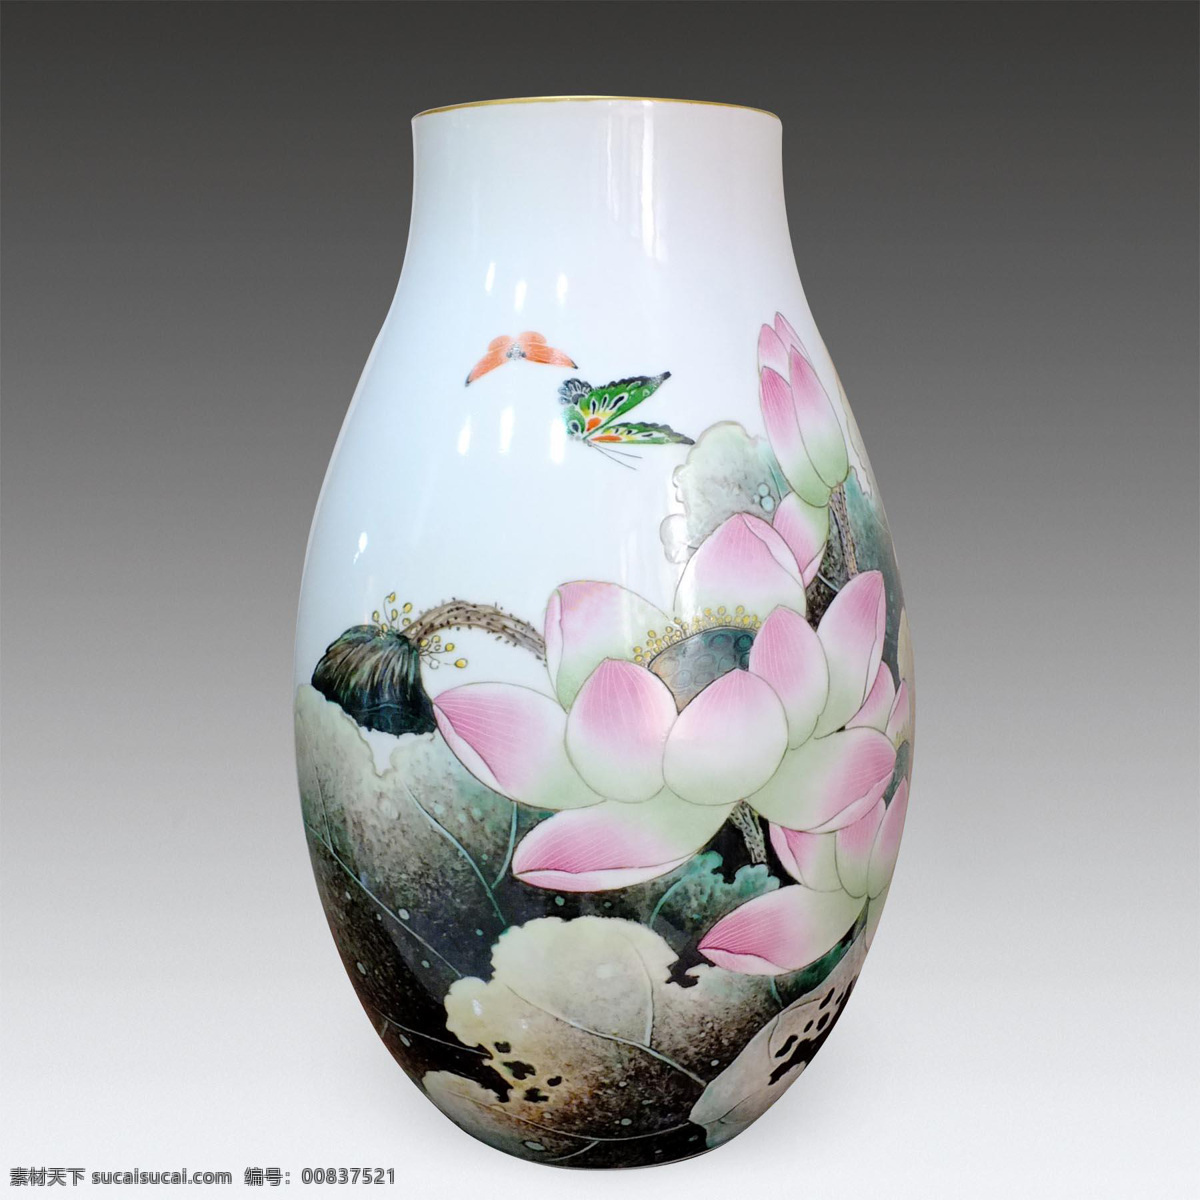 陶瓷 瓷器 瓷罐 彩色陶瓷 瓷瓶 荷花 文化艺术 传统文化